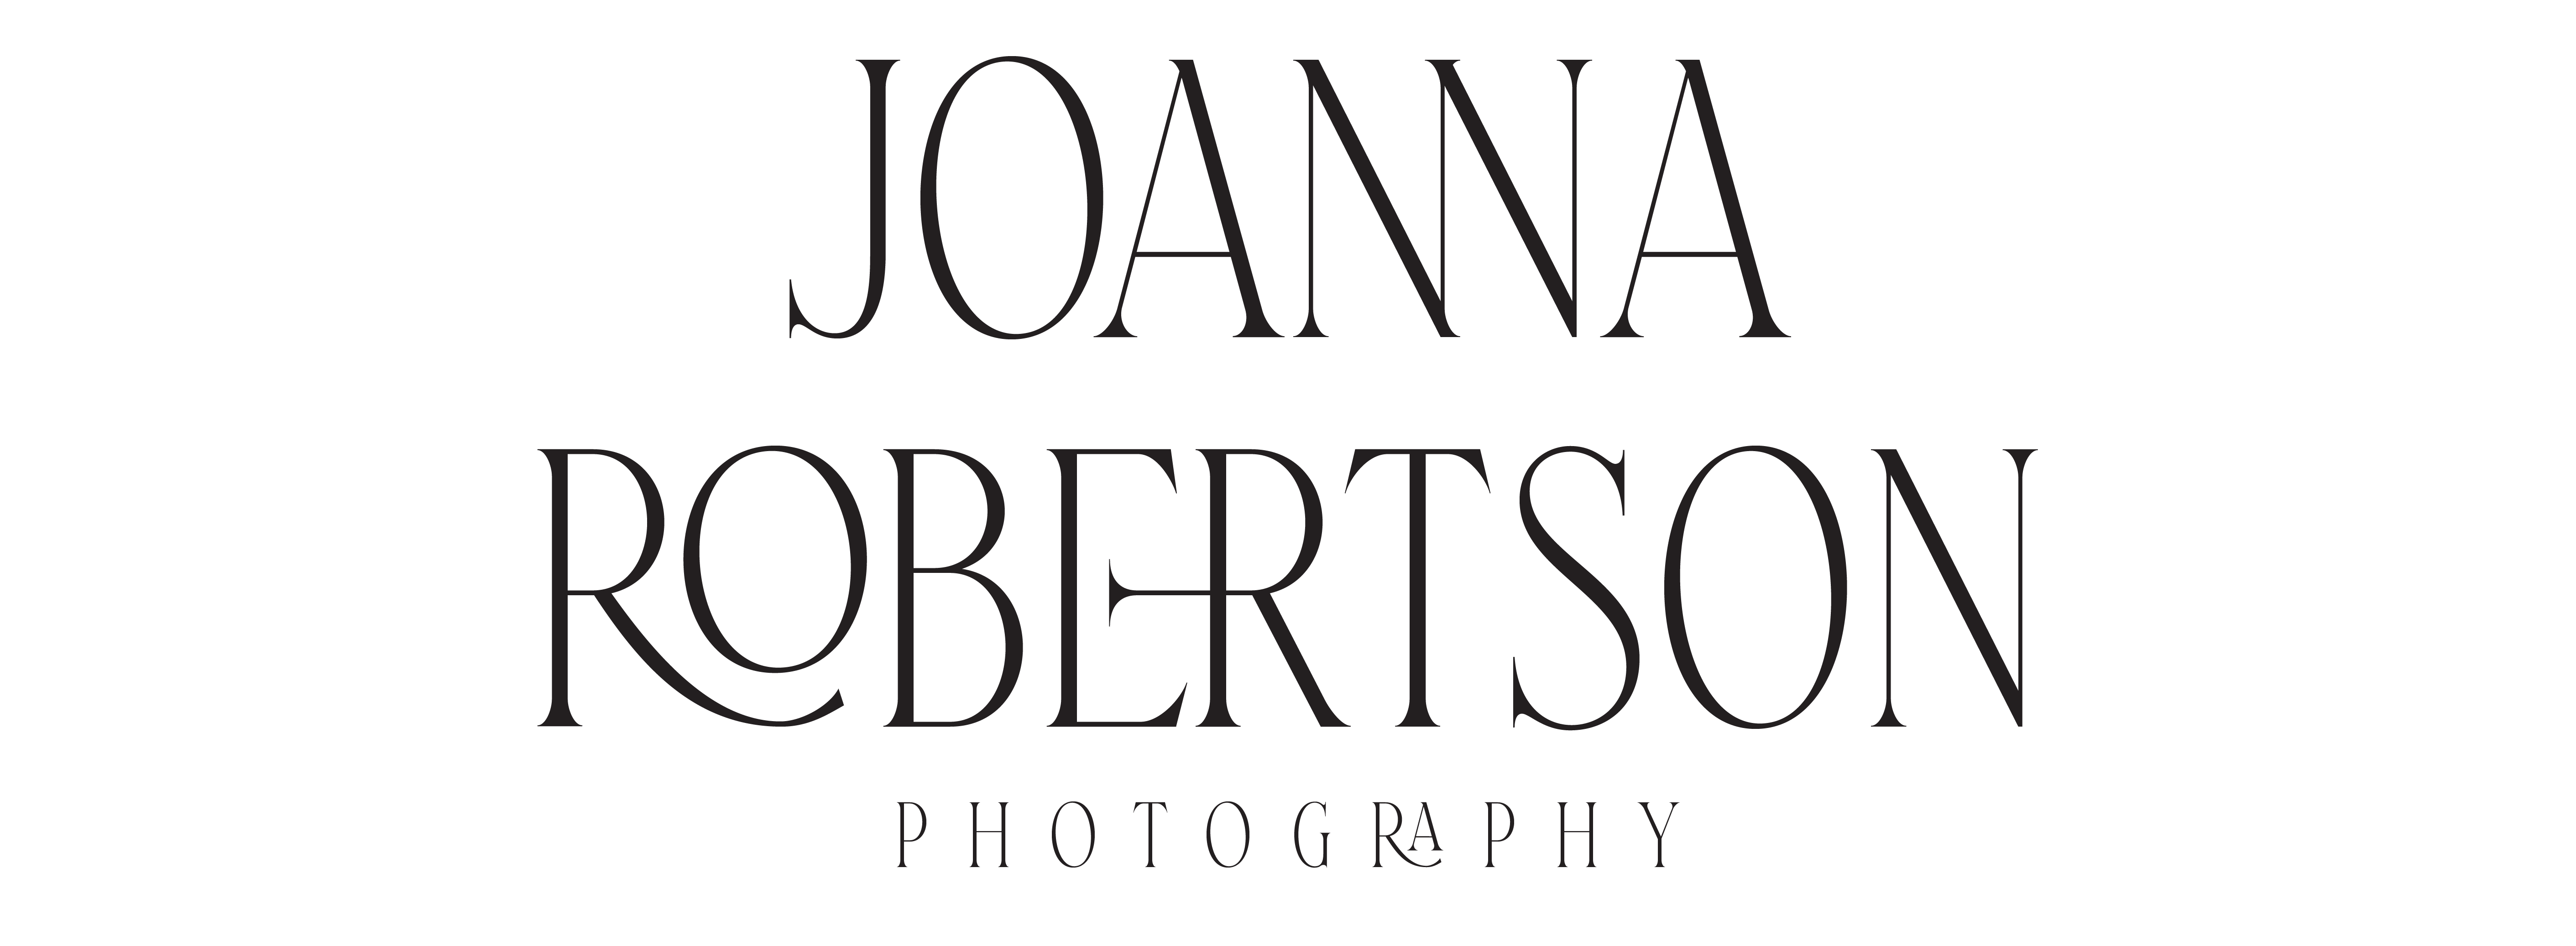 JOANNA ROBERTSON